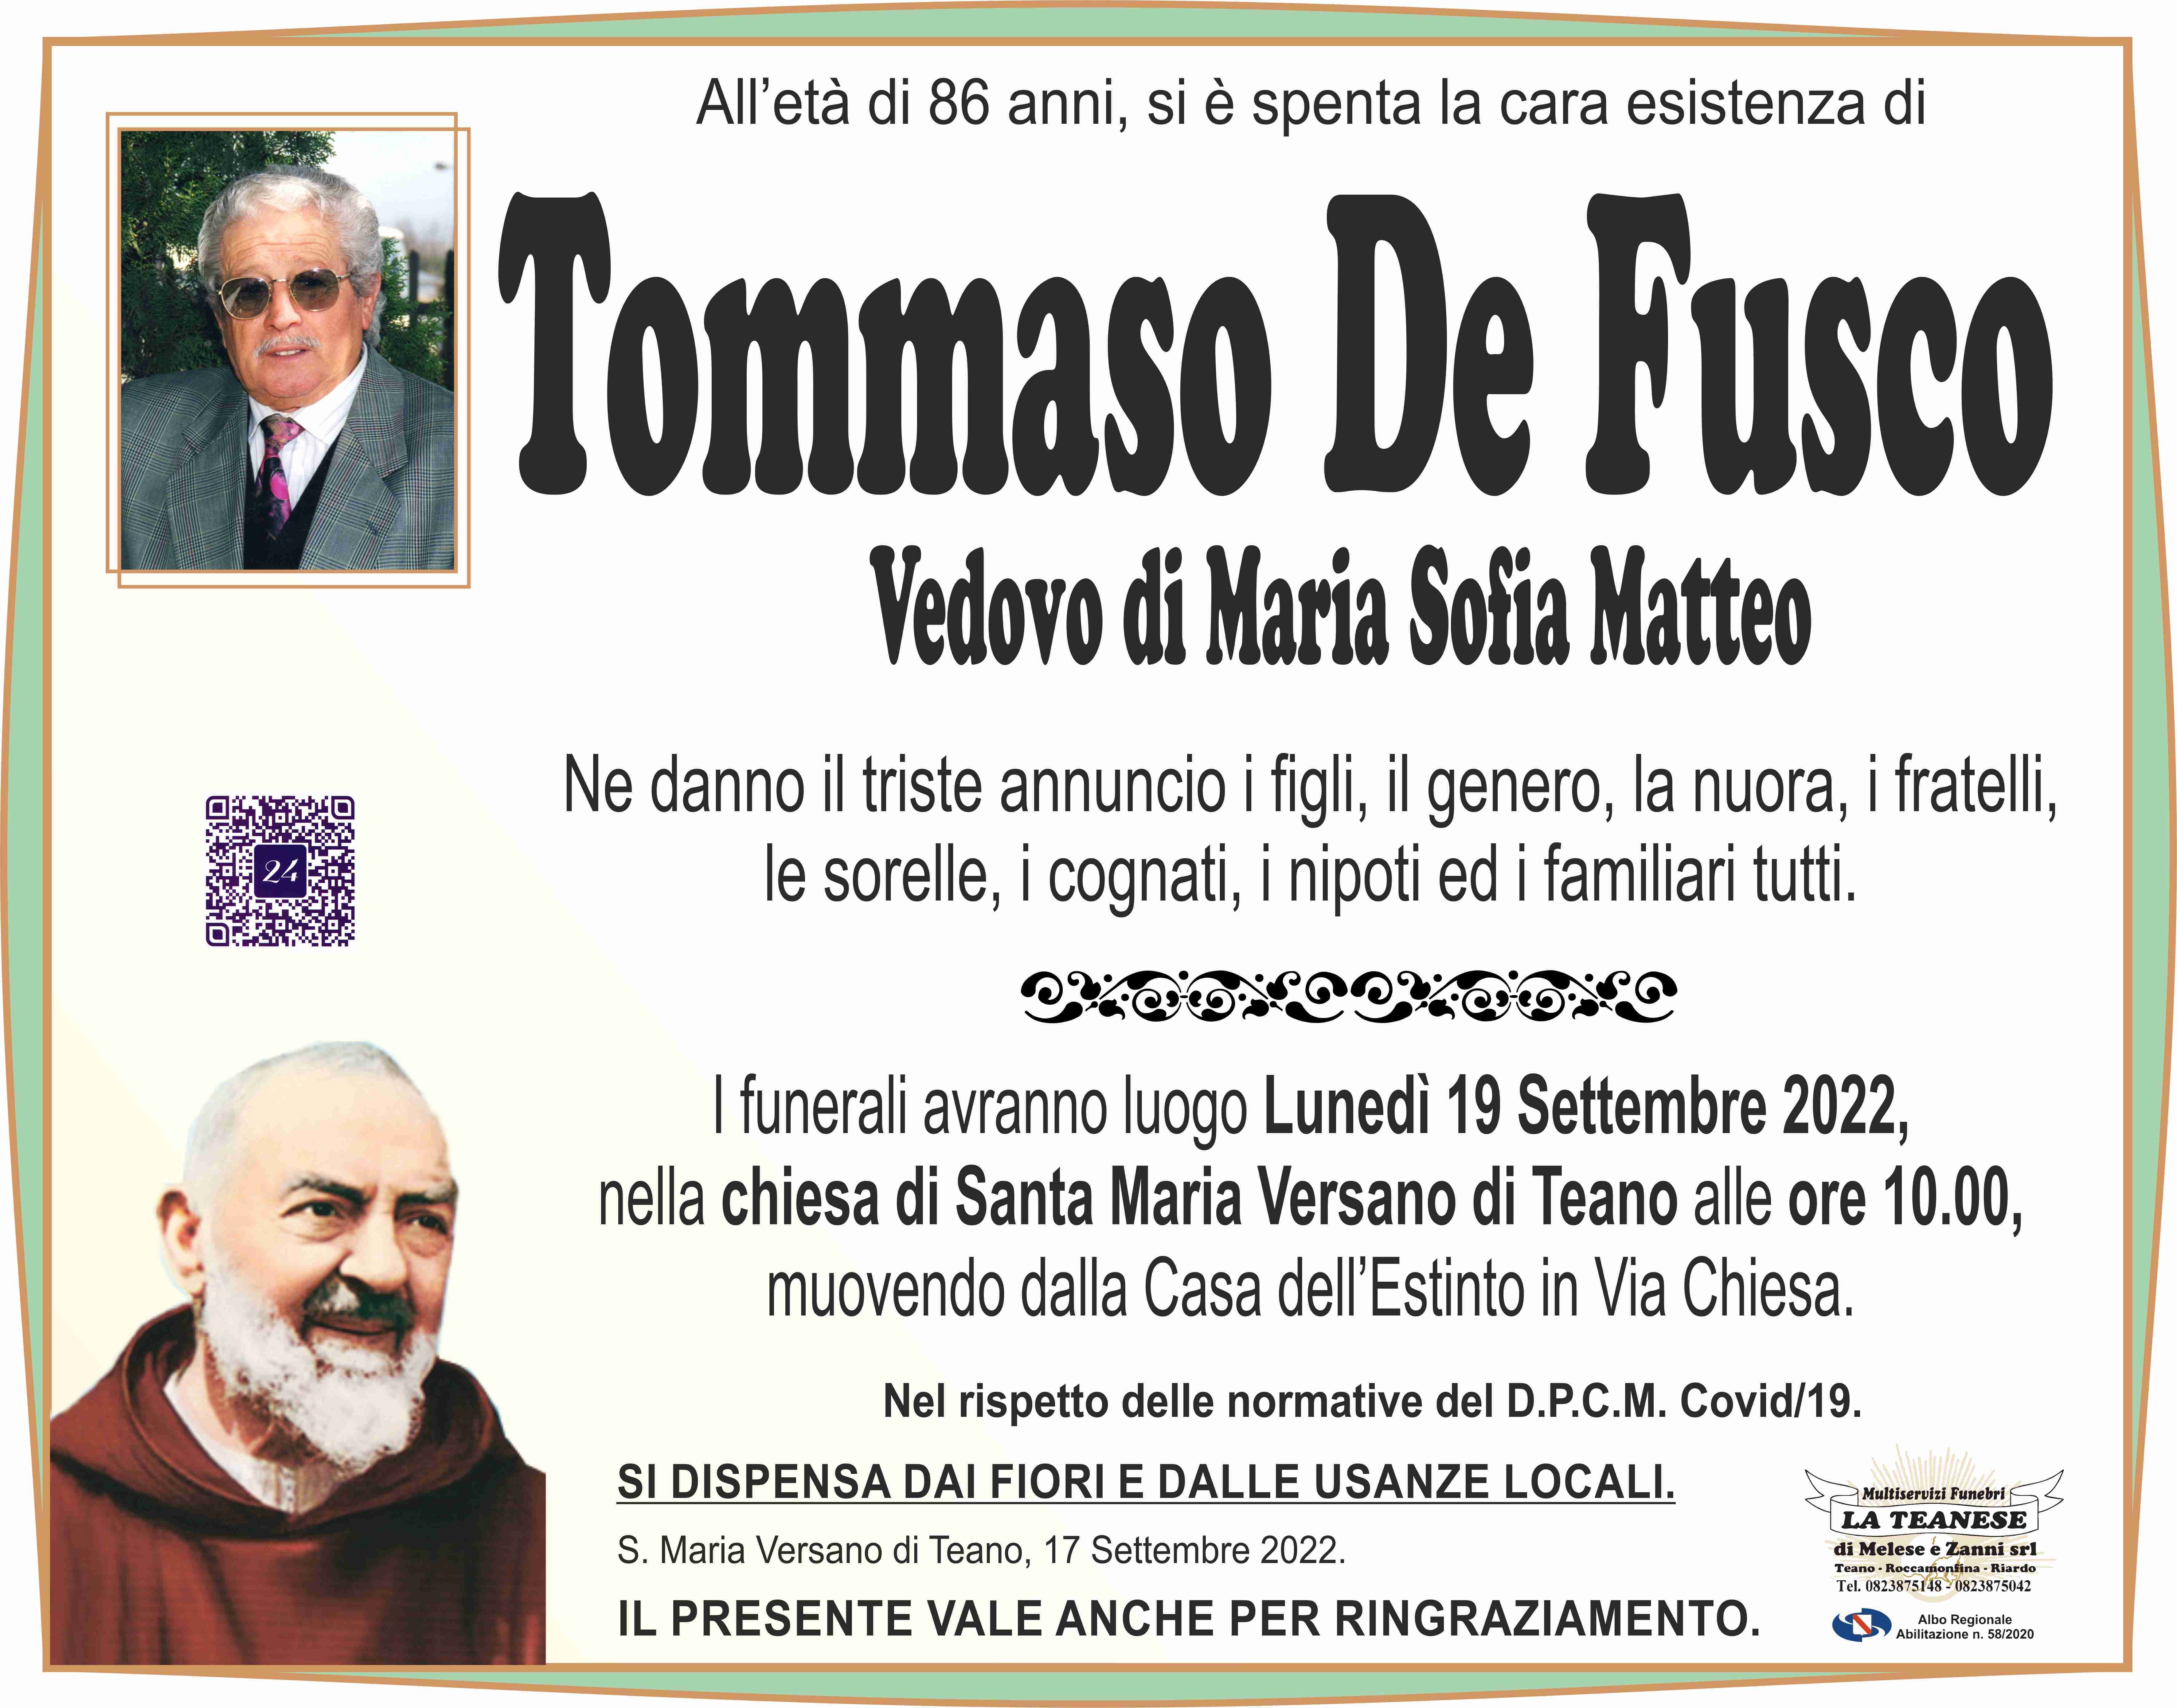 Tommaso De Fusco